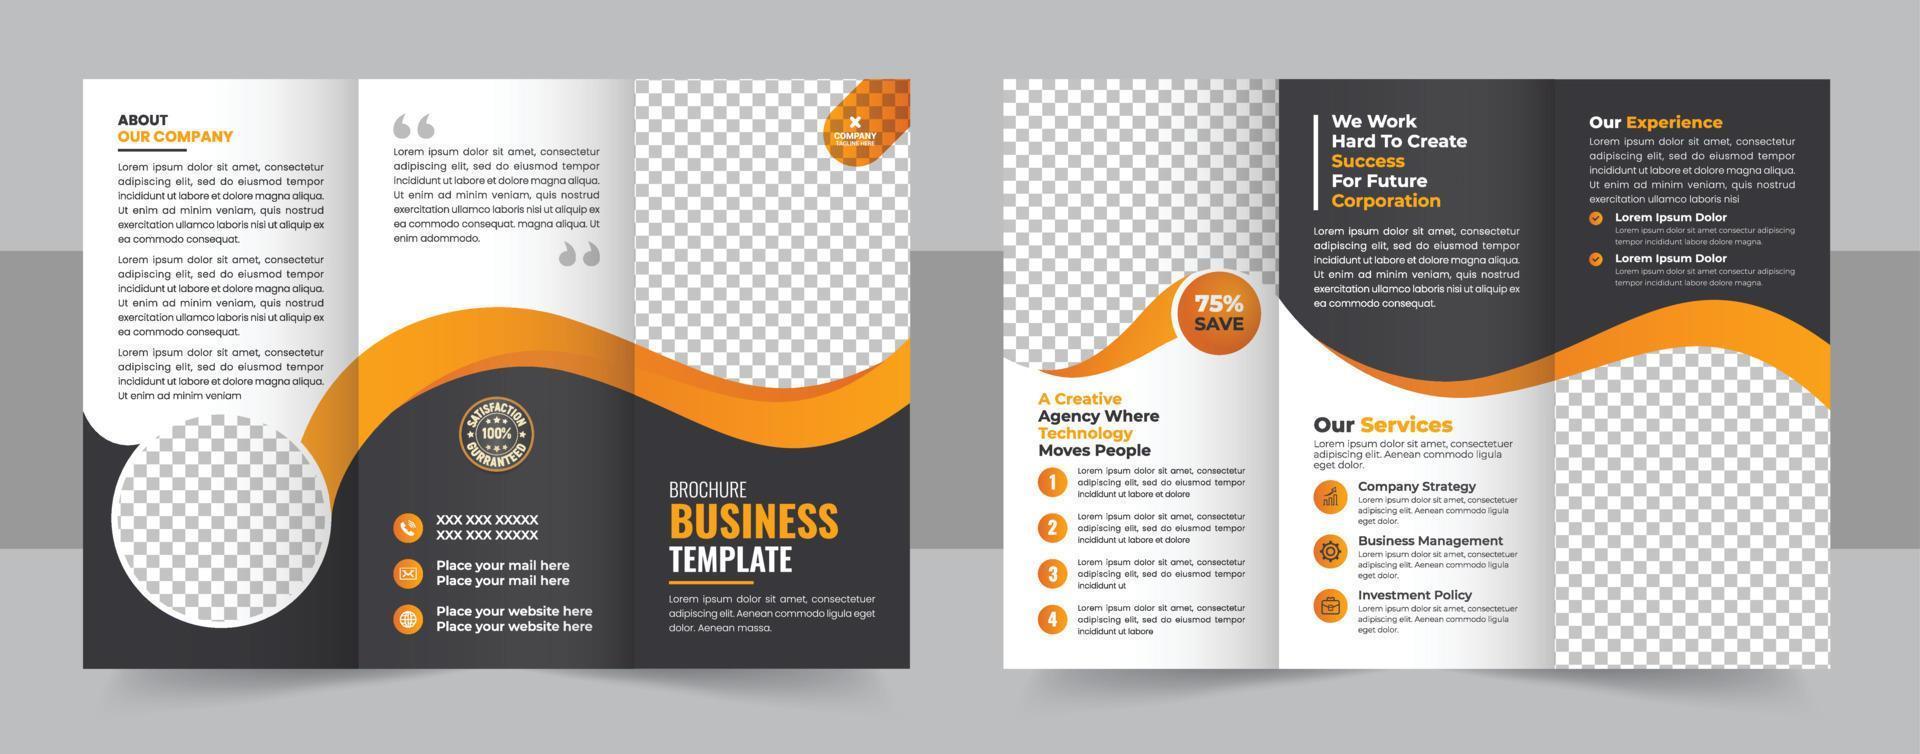 tríptico folleto modelo minimalista geométrico diseño para corporativo y negocio. creativo concepto folleto vector modelo